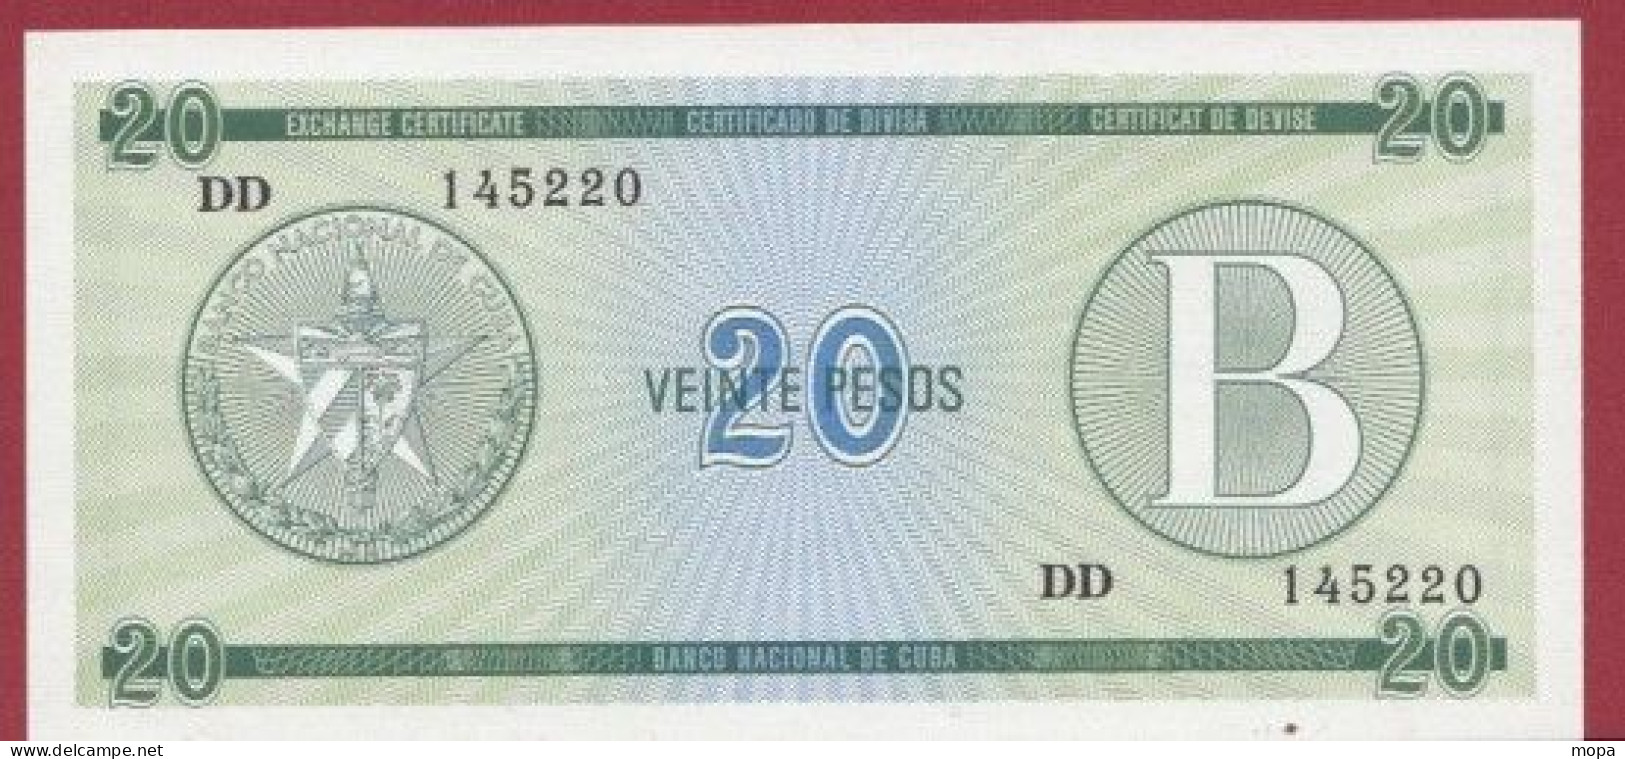 Cuba--20 Pesos ---1985-  (B)----UNC---(449) - Cuba